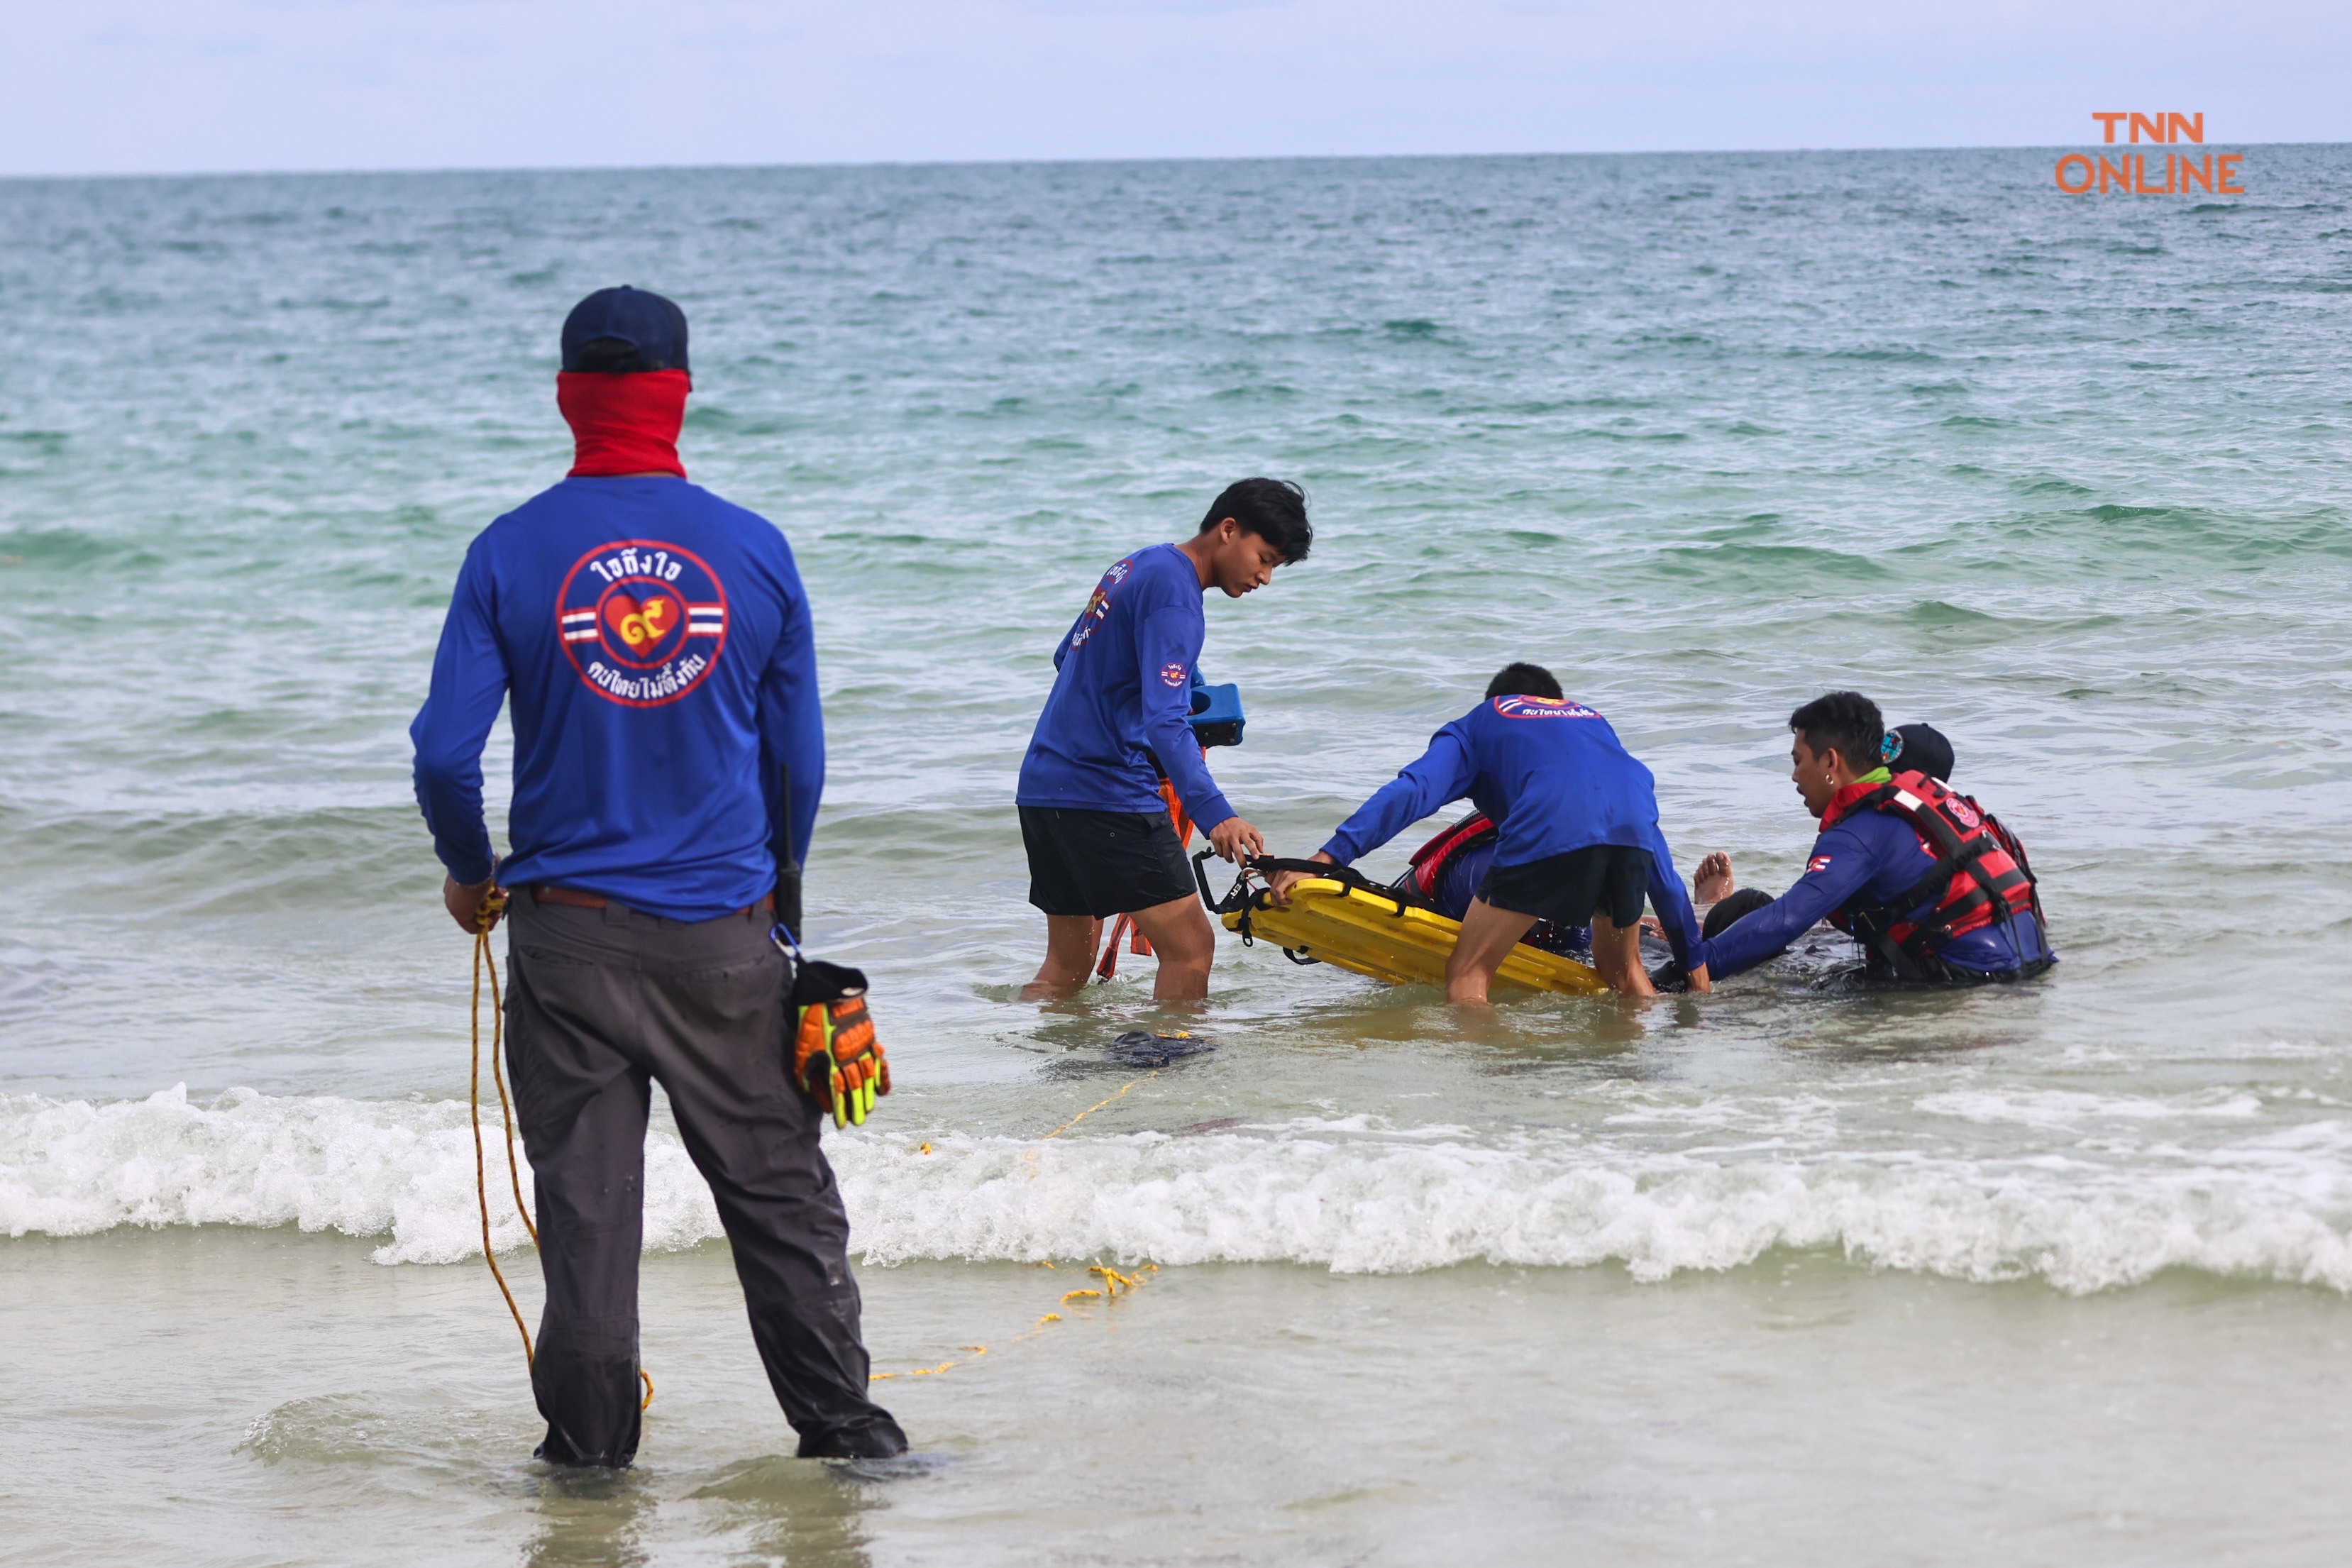 ประมวลภาพ ทร. ร่วมกับ หน่วยกู้ภัยใจถึงใจคนไทยไม่ทิ้งกัน นำโดยเล็กฝันเด่นจำลองสถานการณ์ช่วยเหลือผู้ประสบภัยทางทะเล